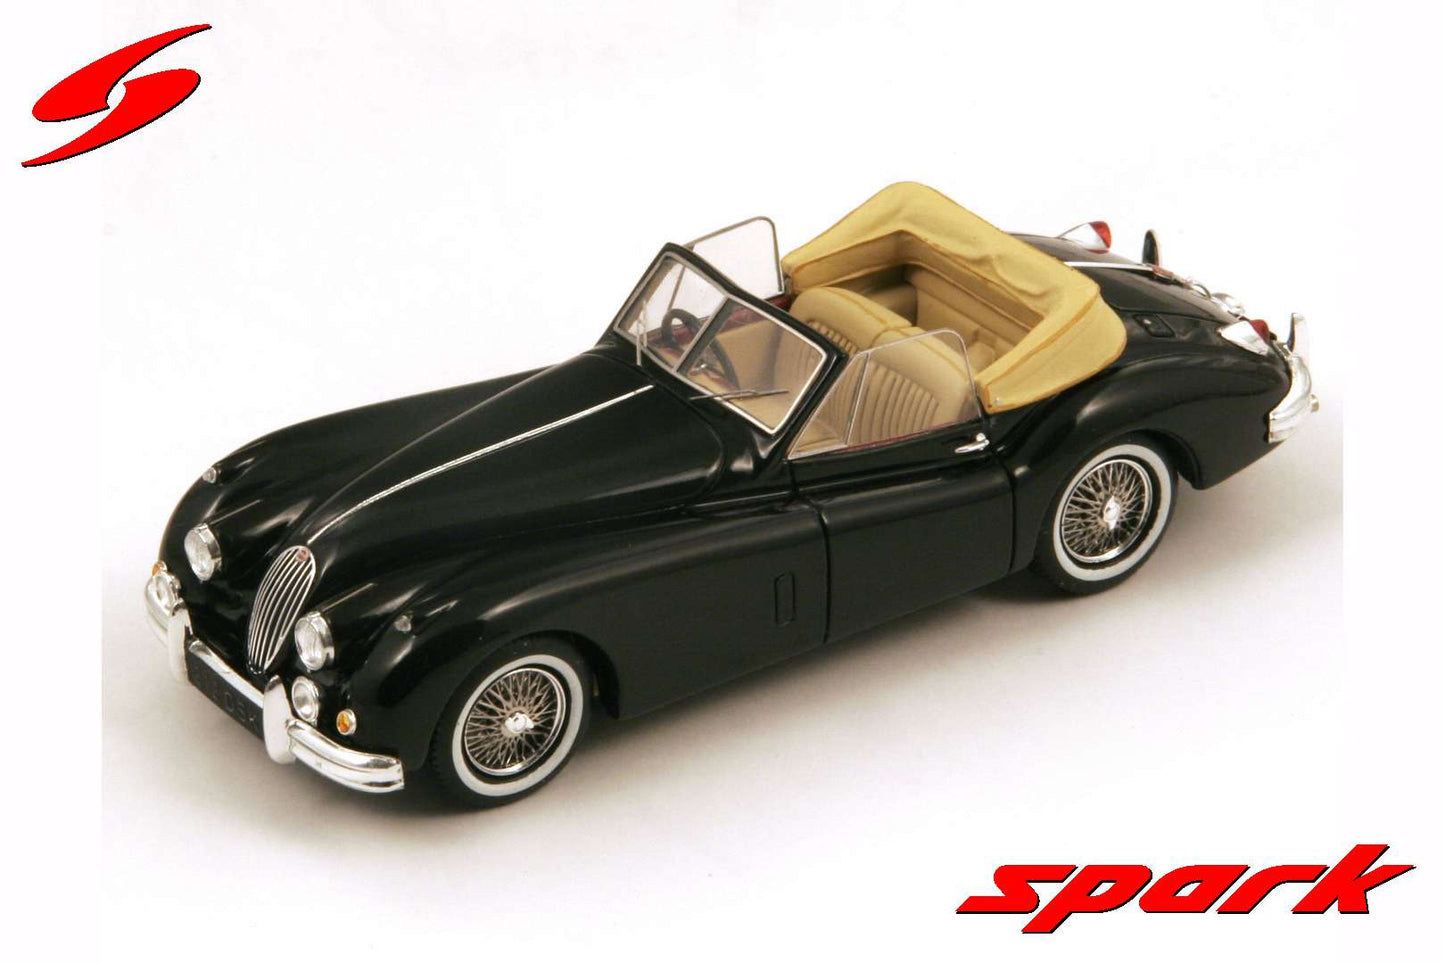 Spark 1:43 Jaguar XK 140 Drophead Coupe S2130